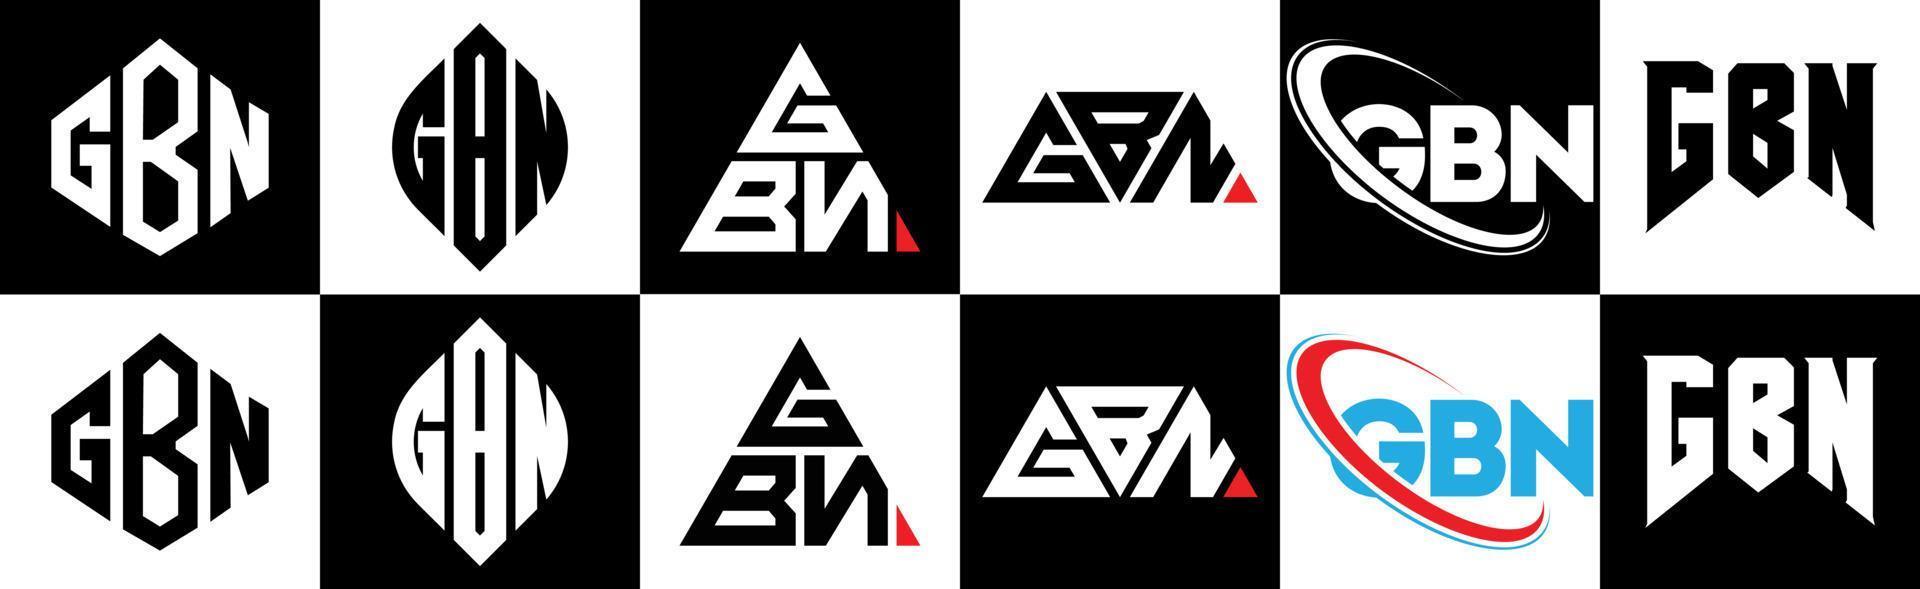 gbn-Buchstaben-Logo-Design in sechs Stilen. gbn polygon, kreis, dreieck, hexagon, flacher und einfacher stil mit schwarz-weißem farbvariationsbuchstabenlogo in einer zeichenfläche. gbn minimalistisches und klassisches logo vektor